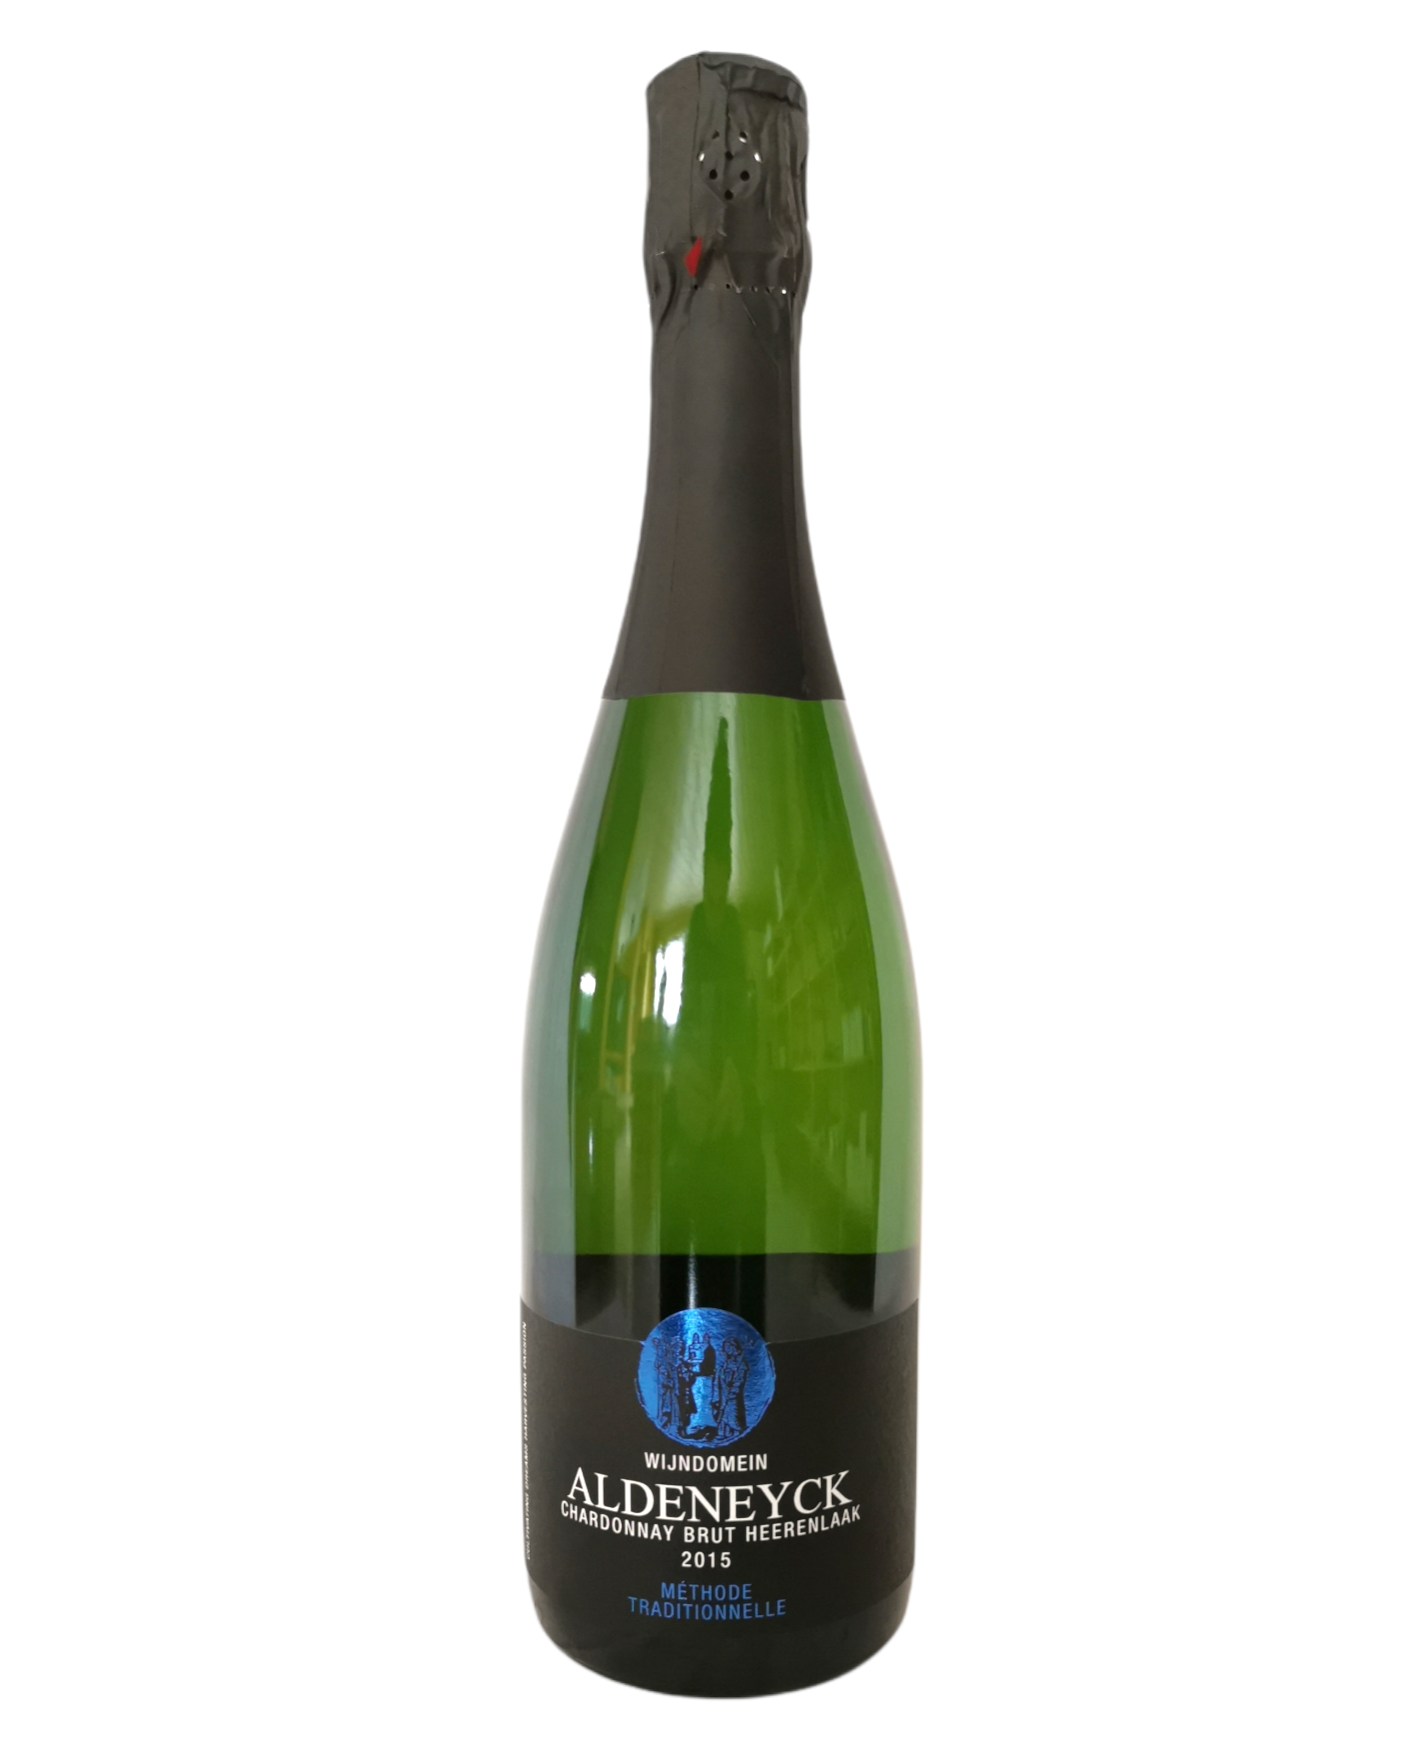 Wijndomein Aldeneyck Chardonnay brut 2015